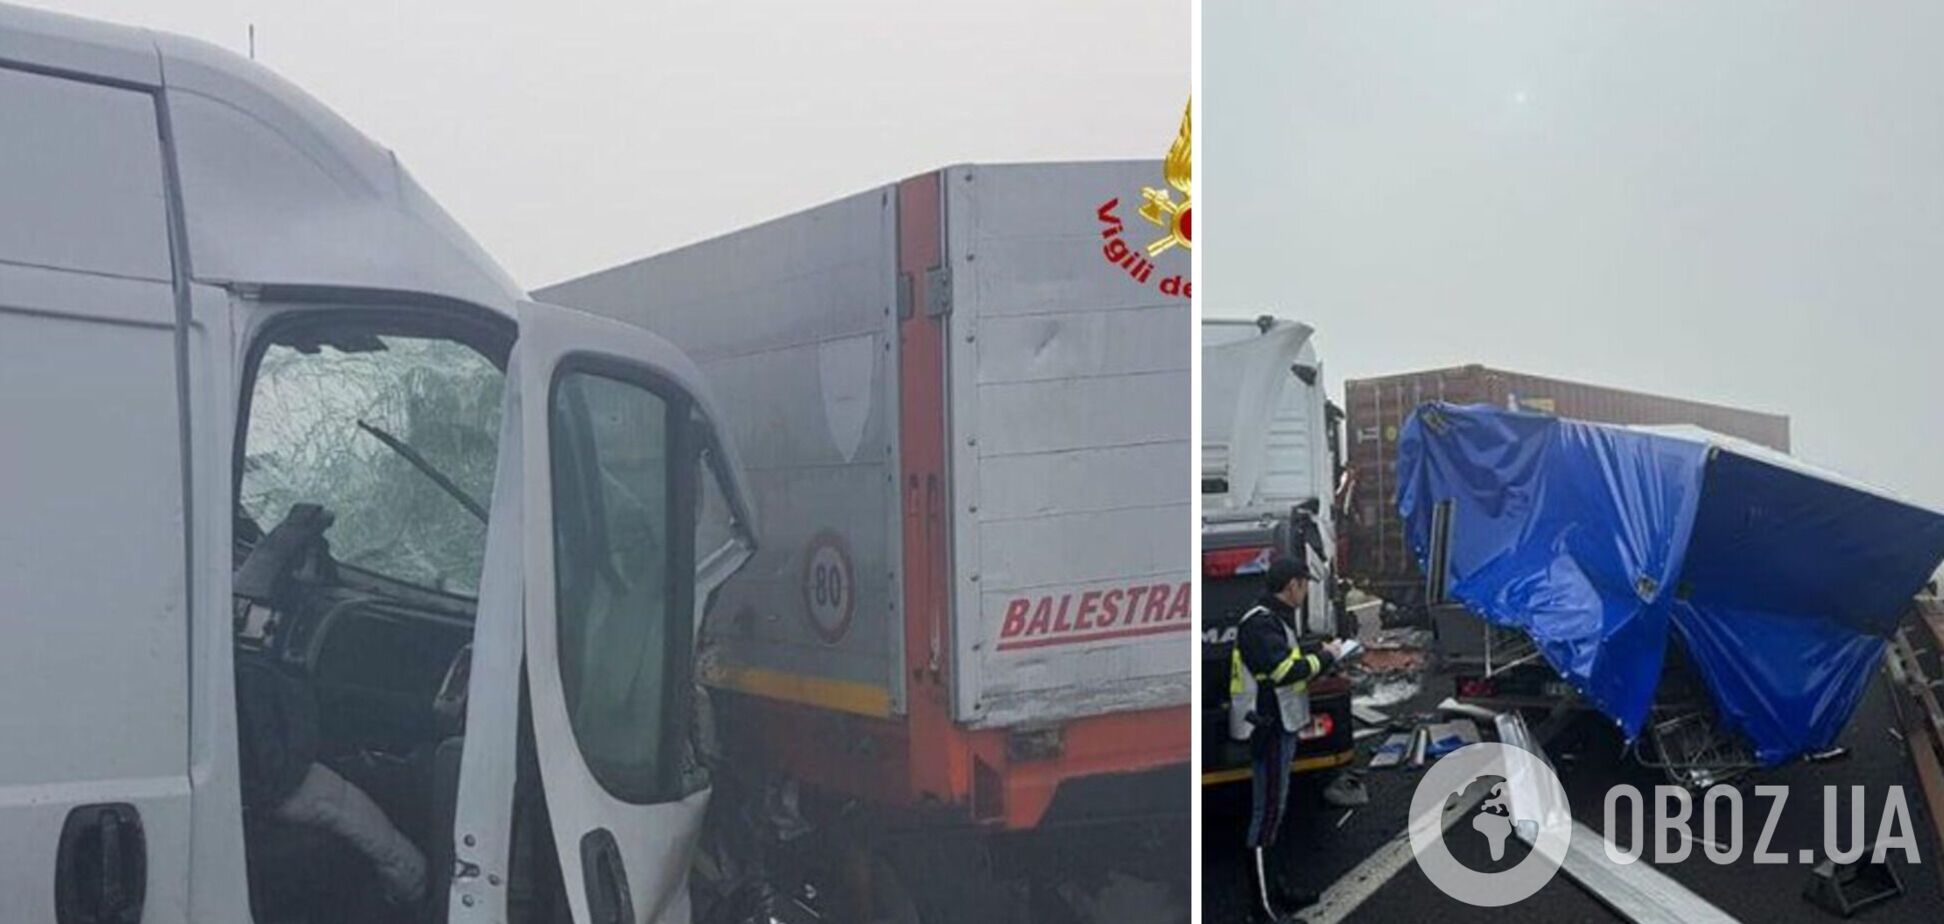 В Италии произошла масштабная авария с участием сотни автомобилей: есть погибшие и пострадавшие. Фото